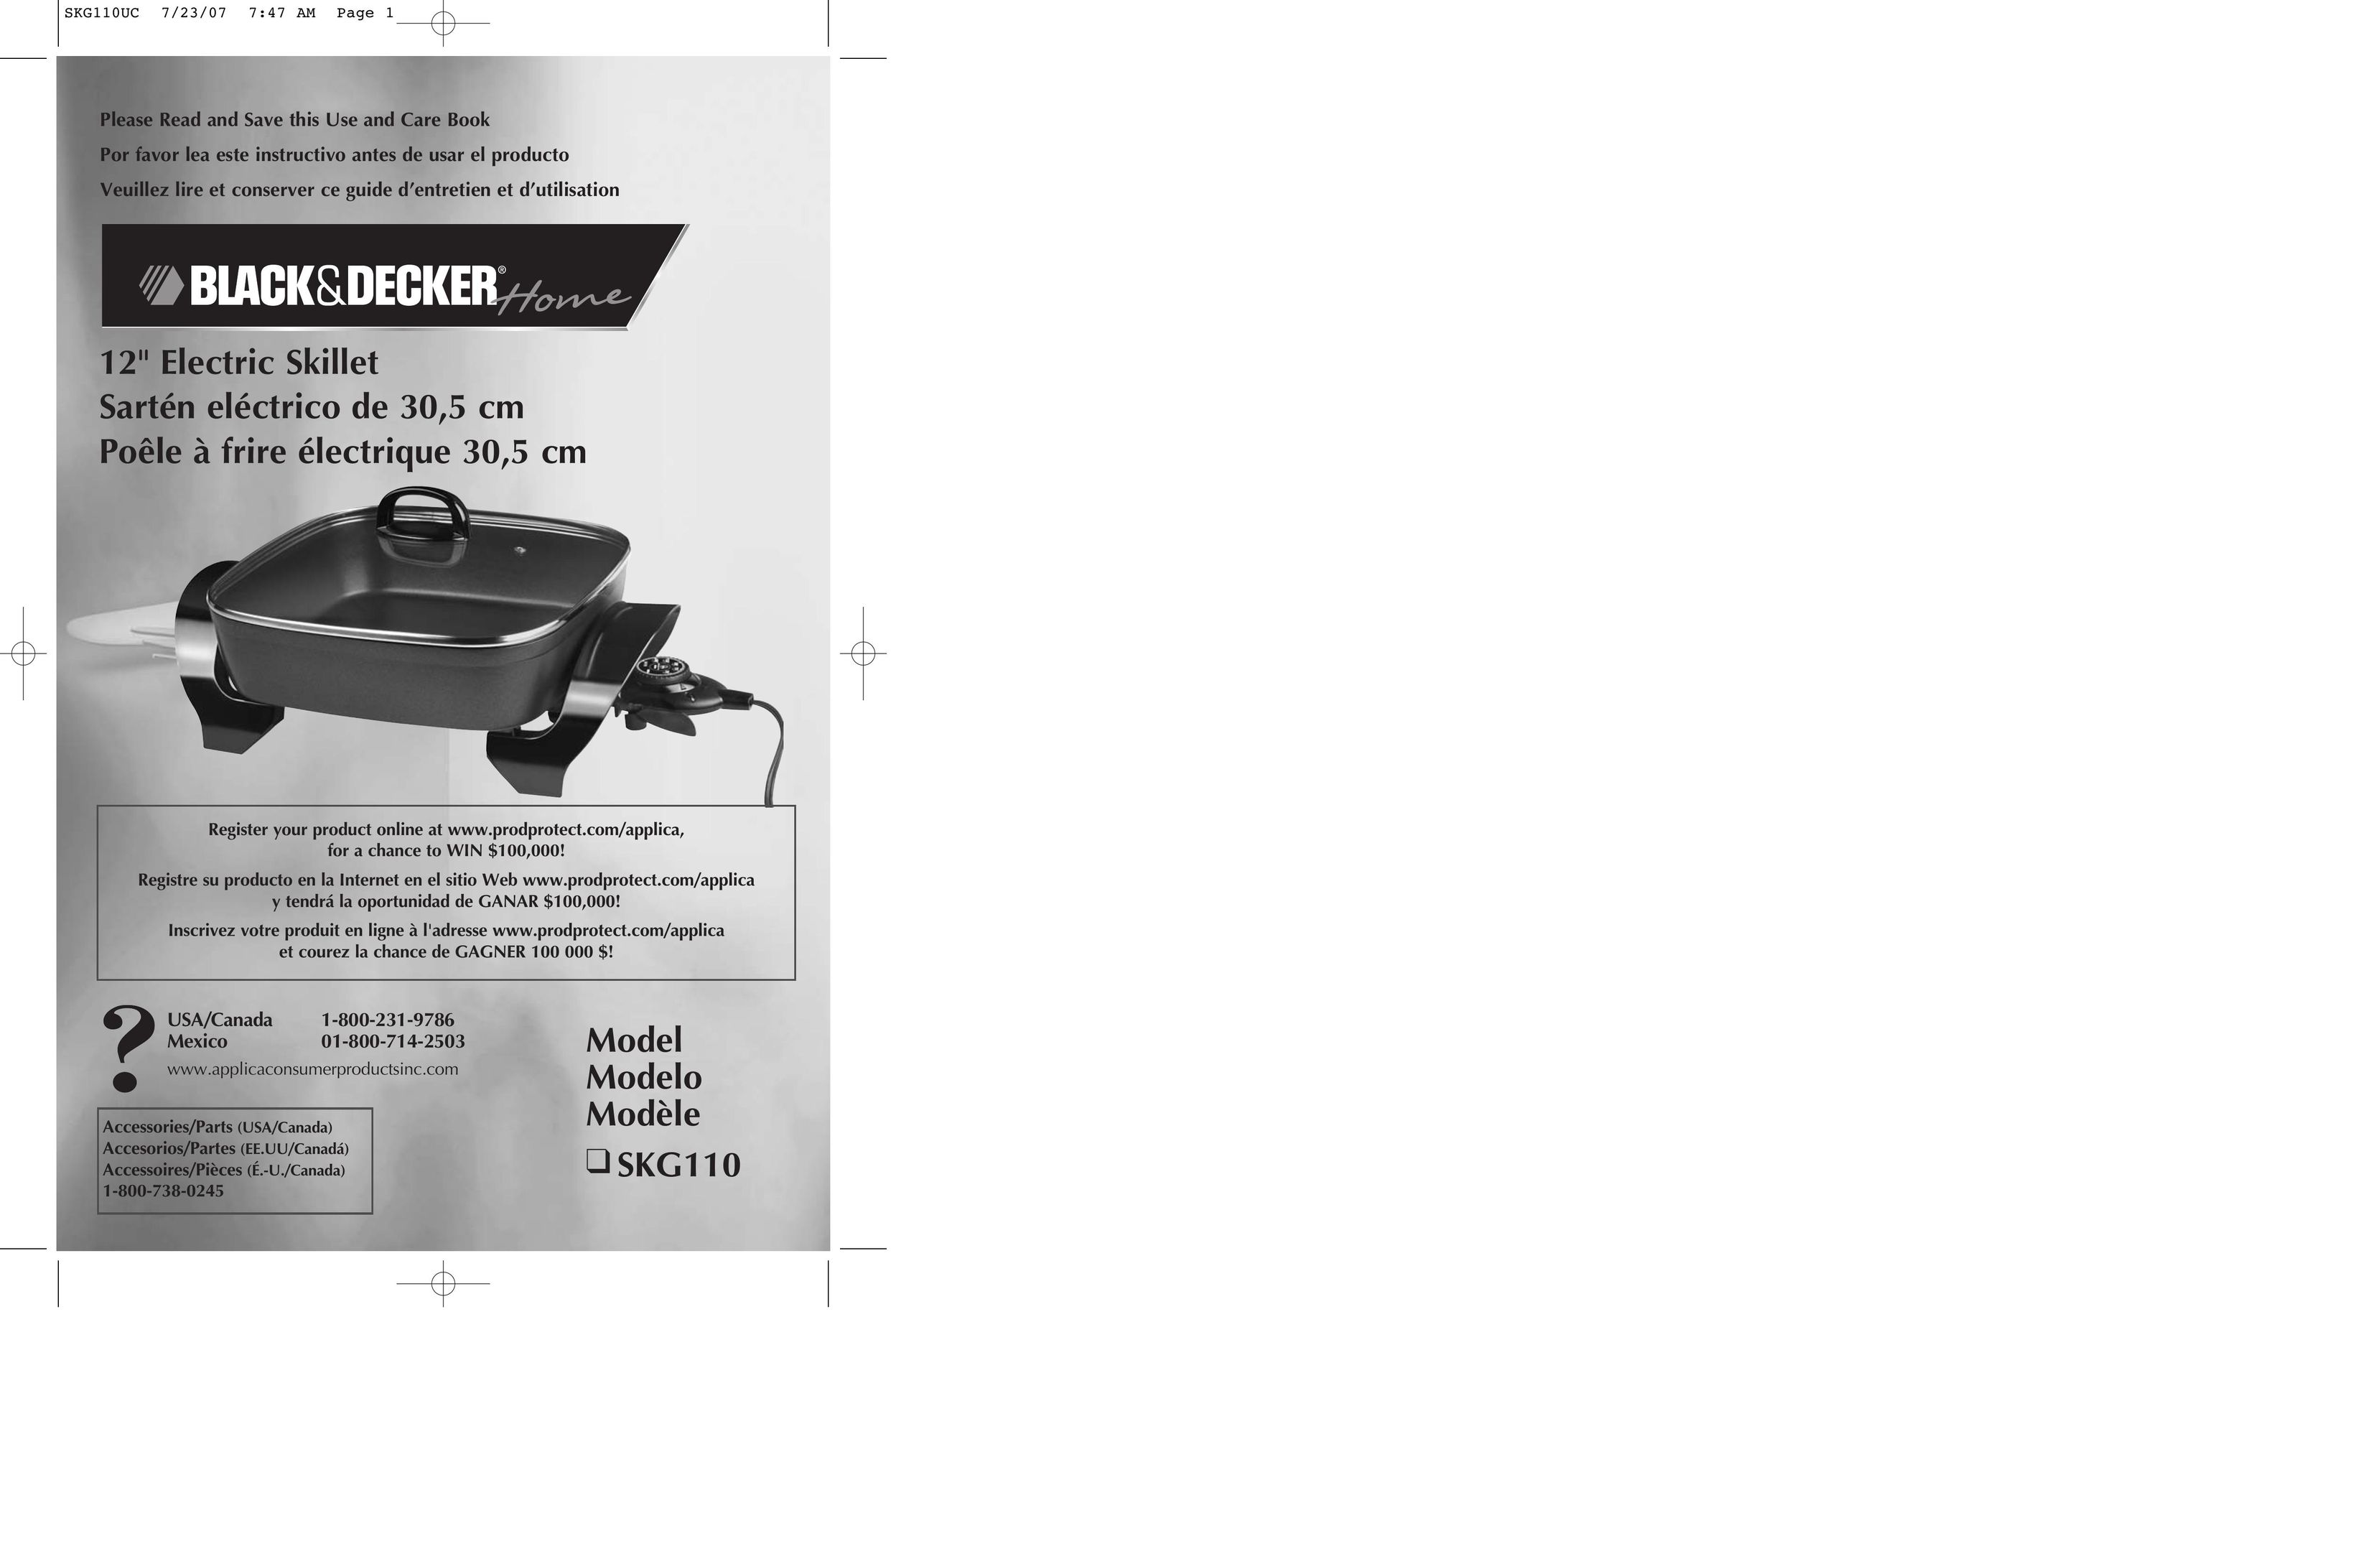 Black & Decker SKG110 Fryer User Manual